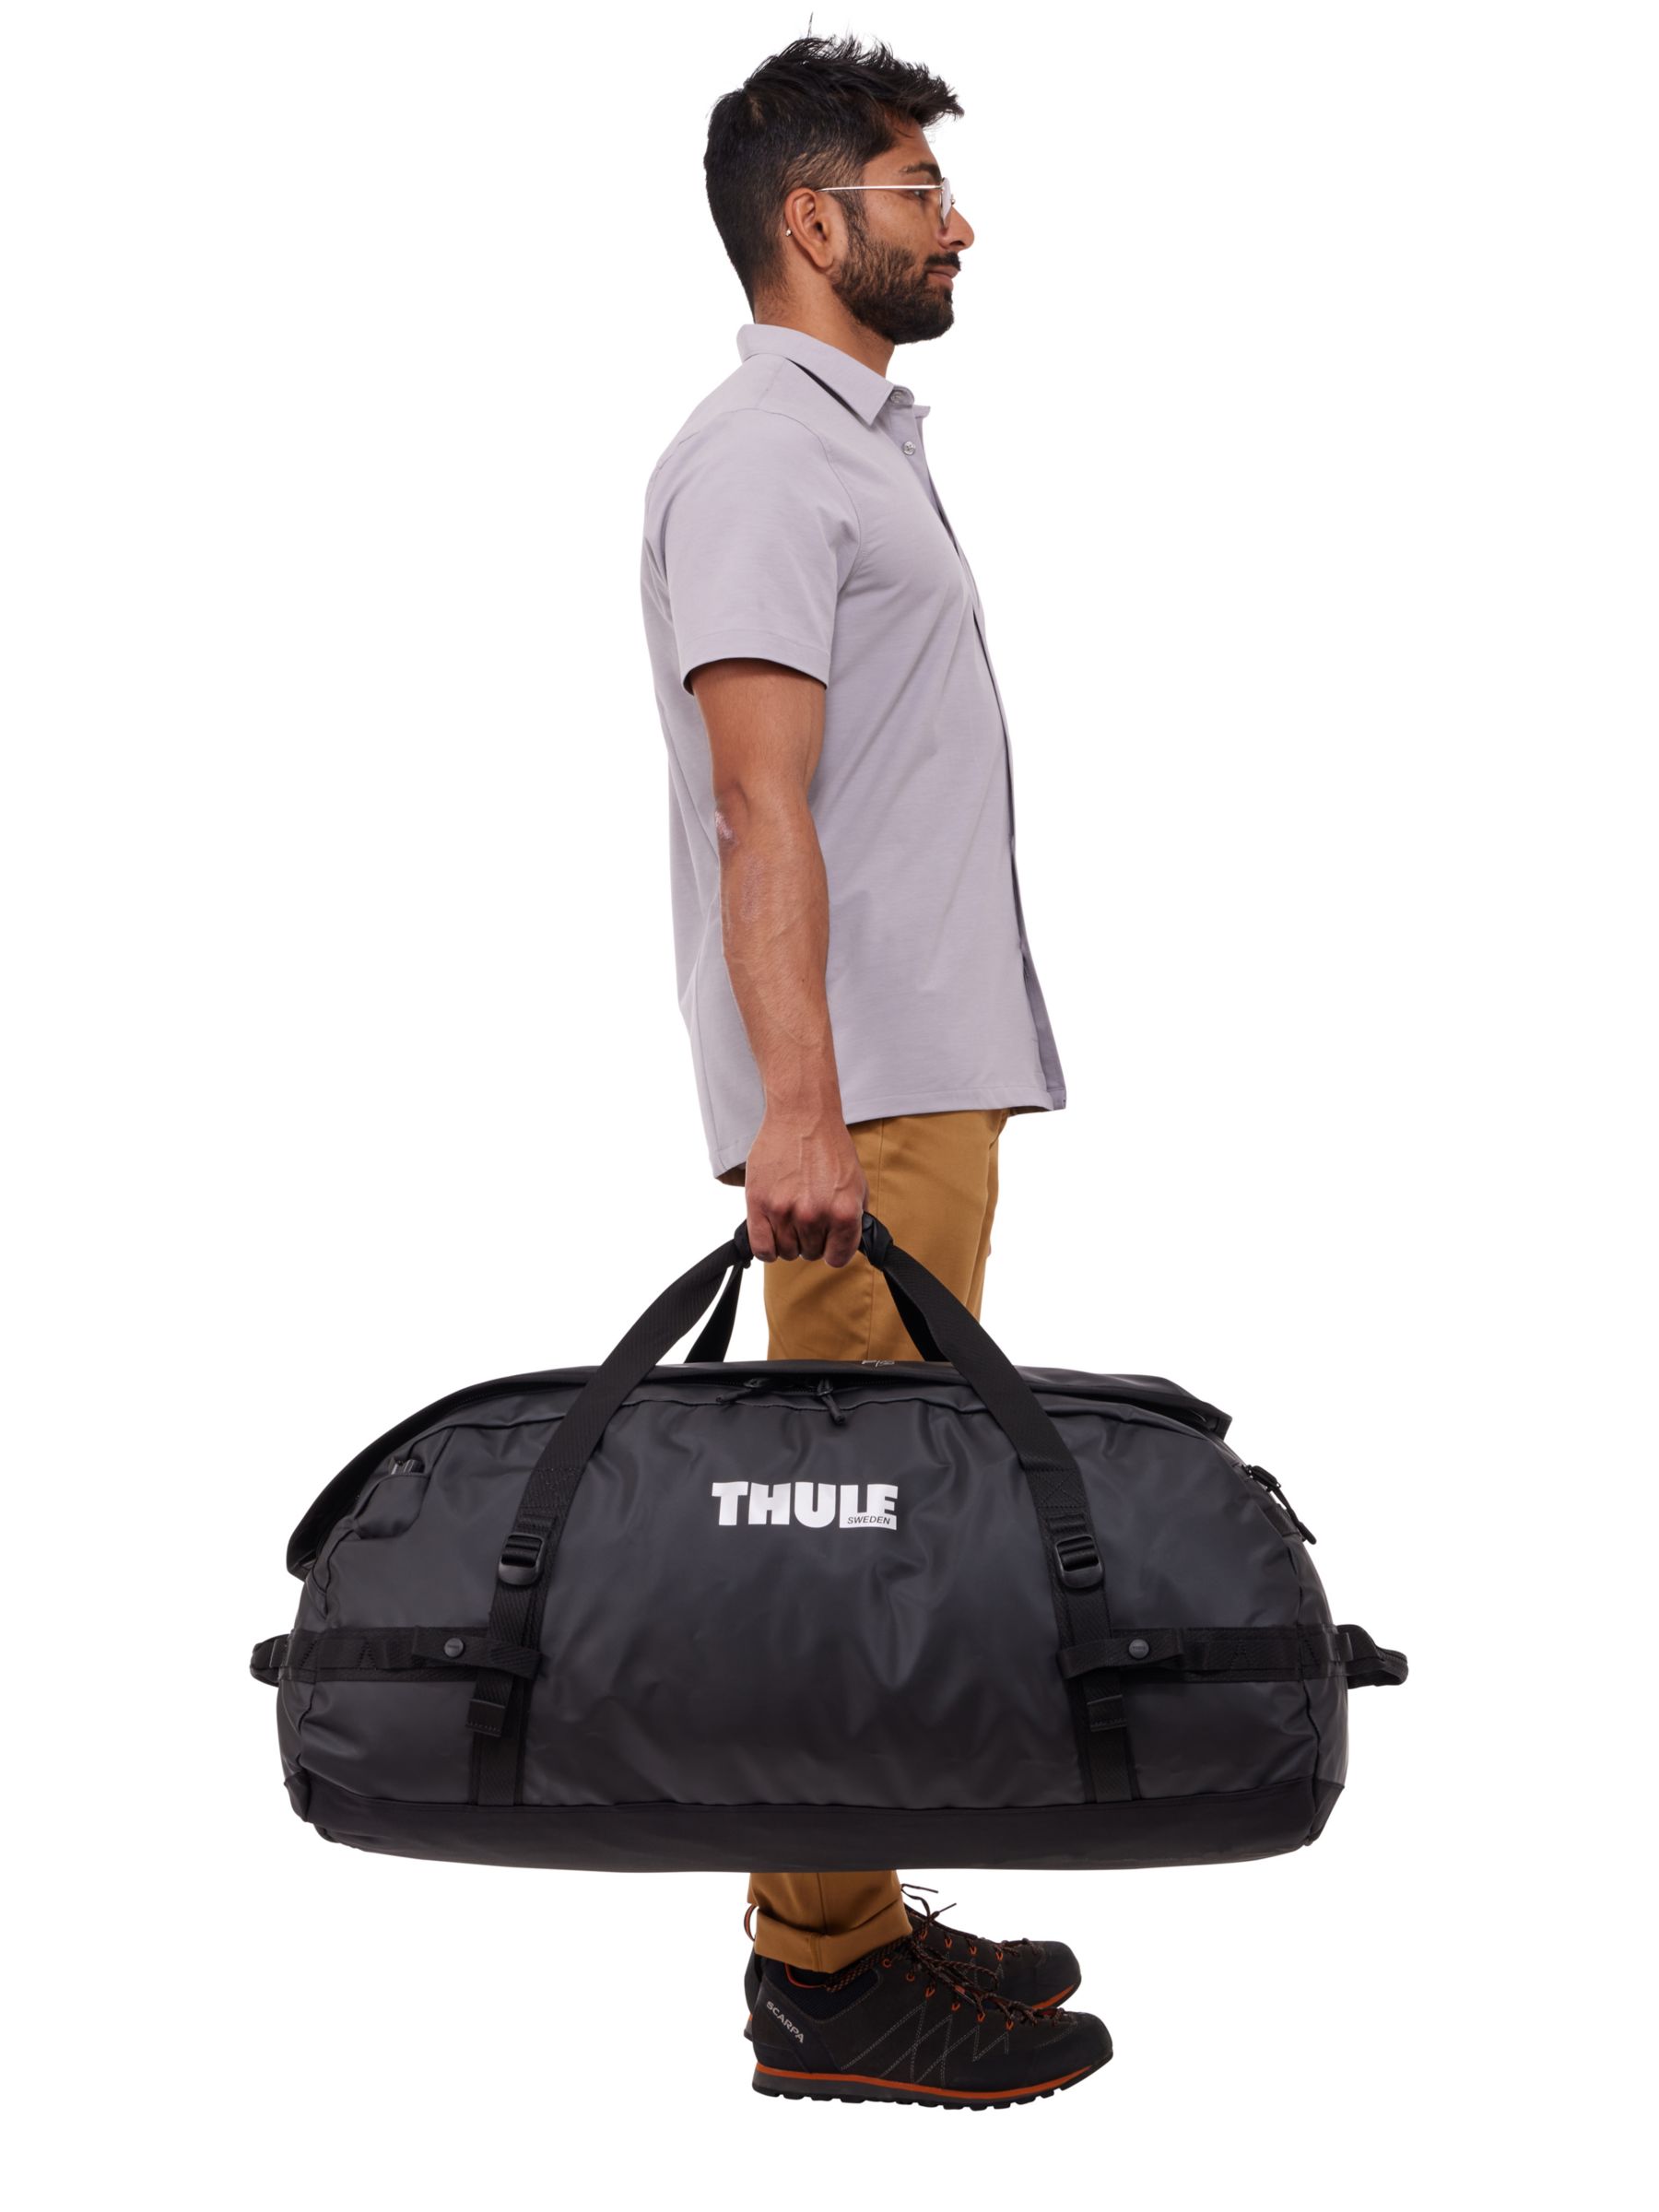 Thule Chasm 90L Duffel Bag, Black at John Lewis & Partners